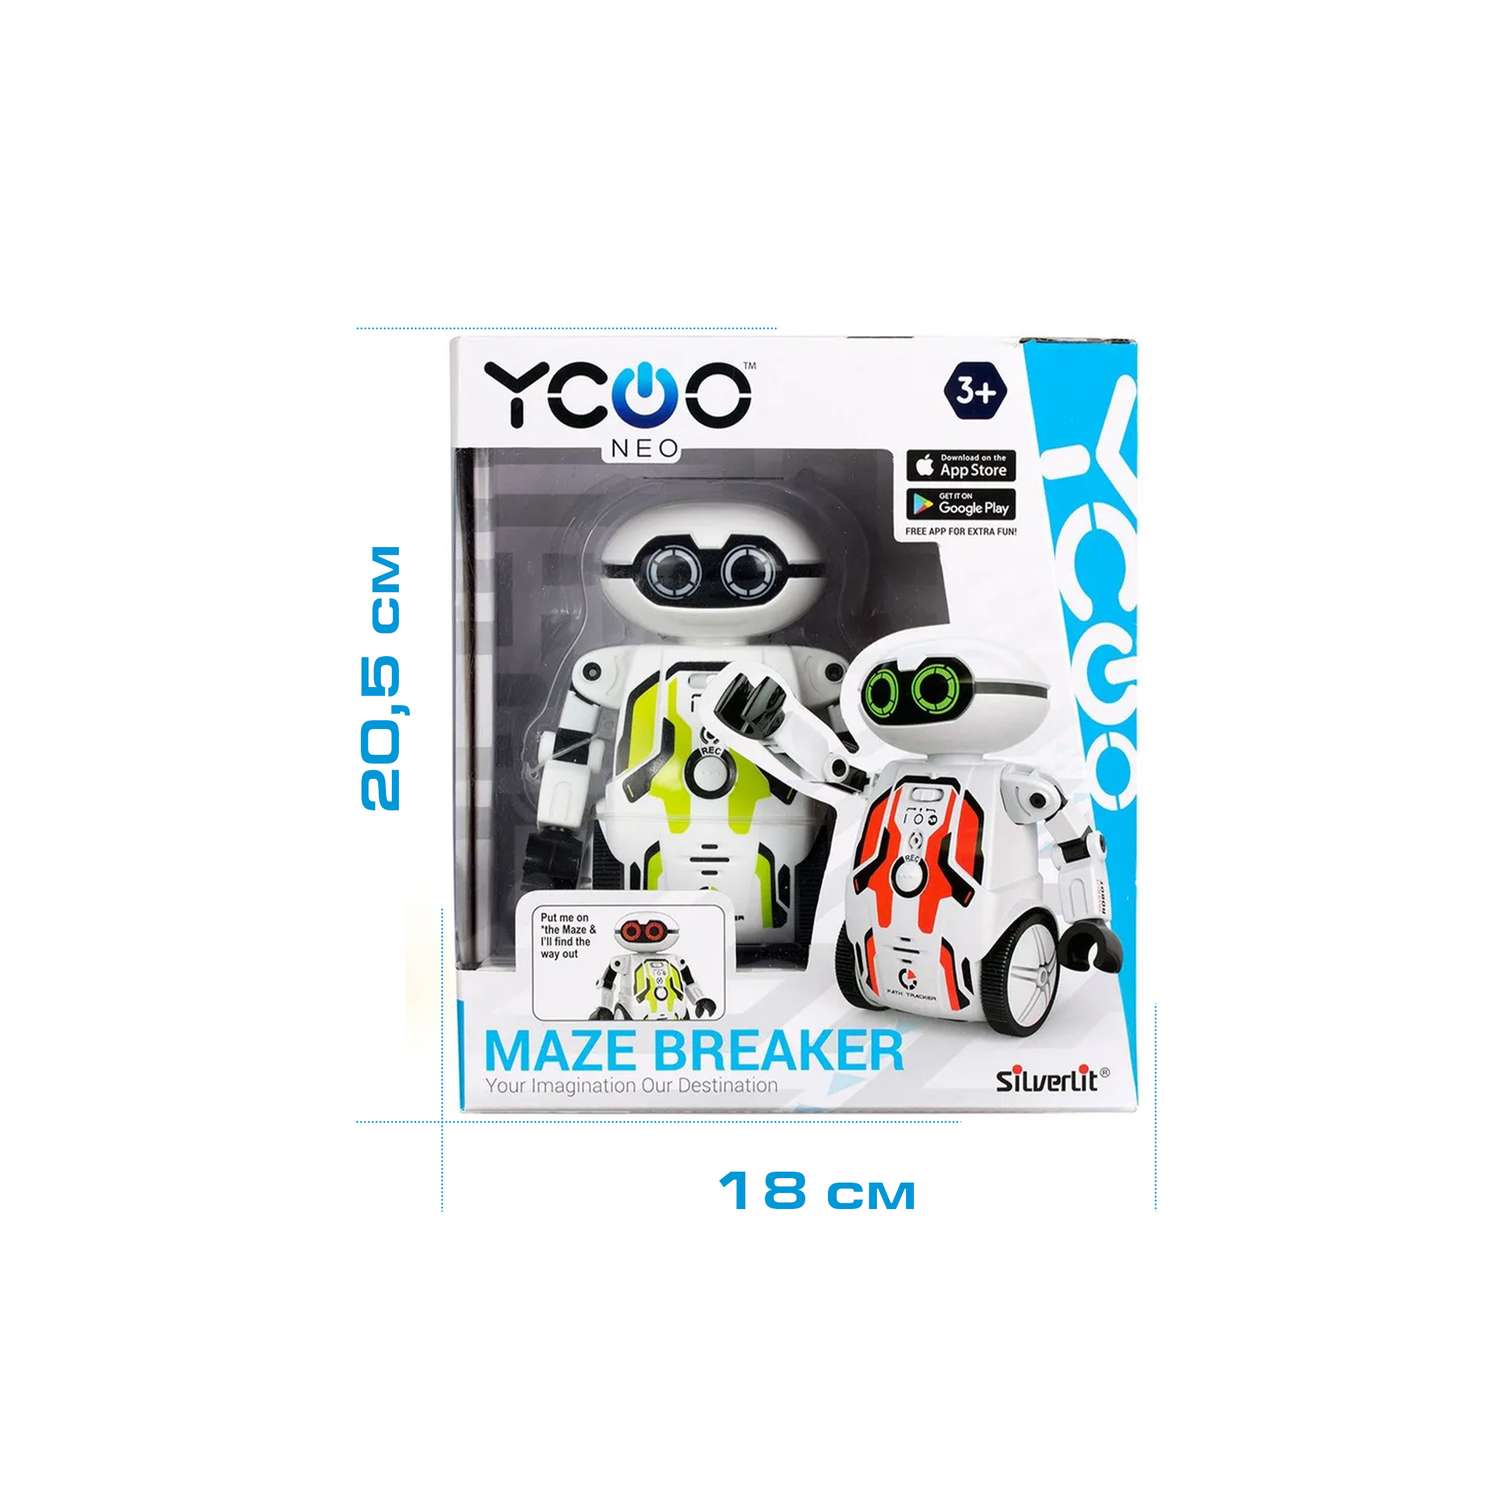 Игрушка YCOO Робот Мэйз Брейкер зеленый - фото 4